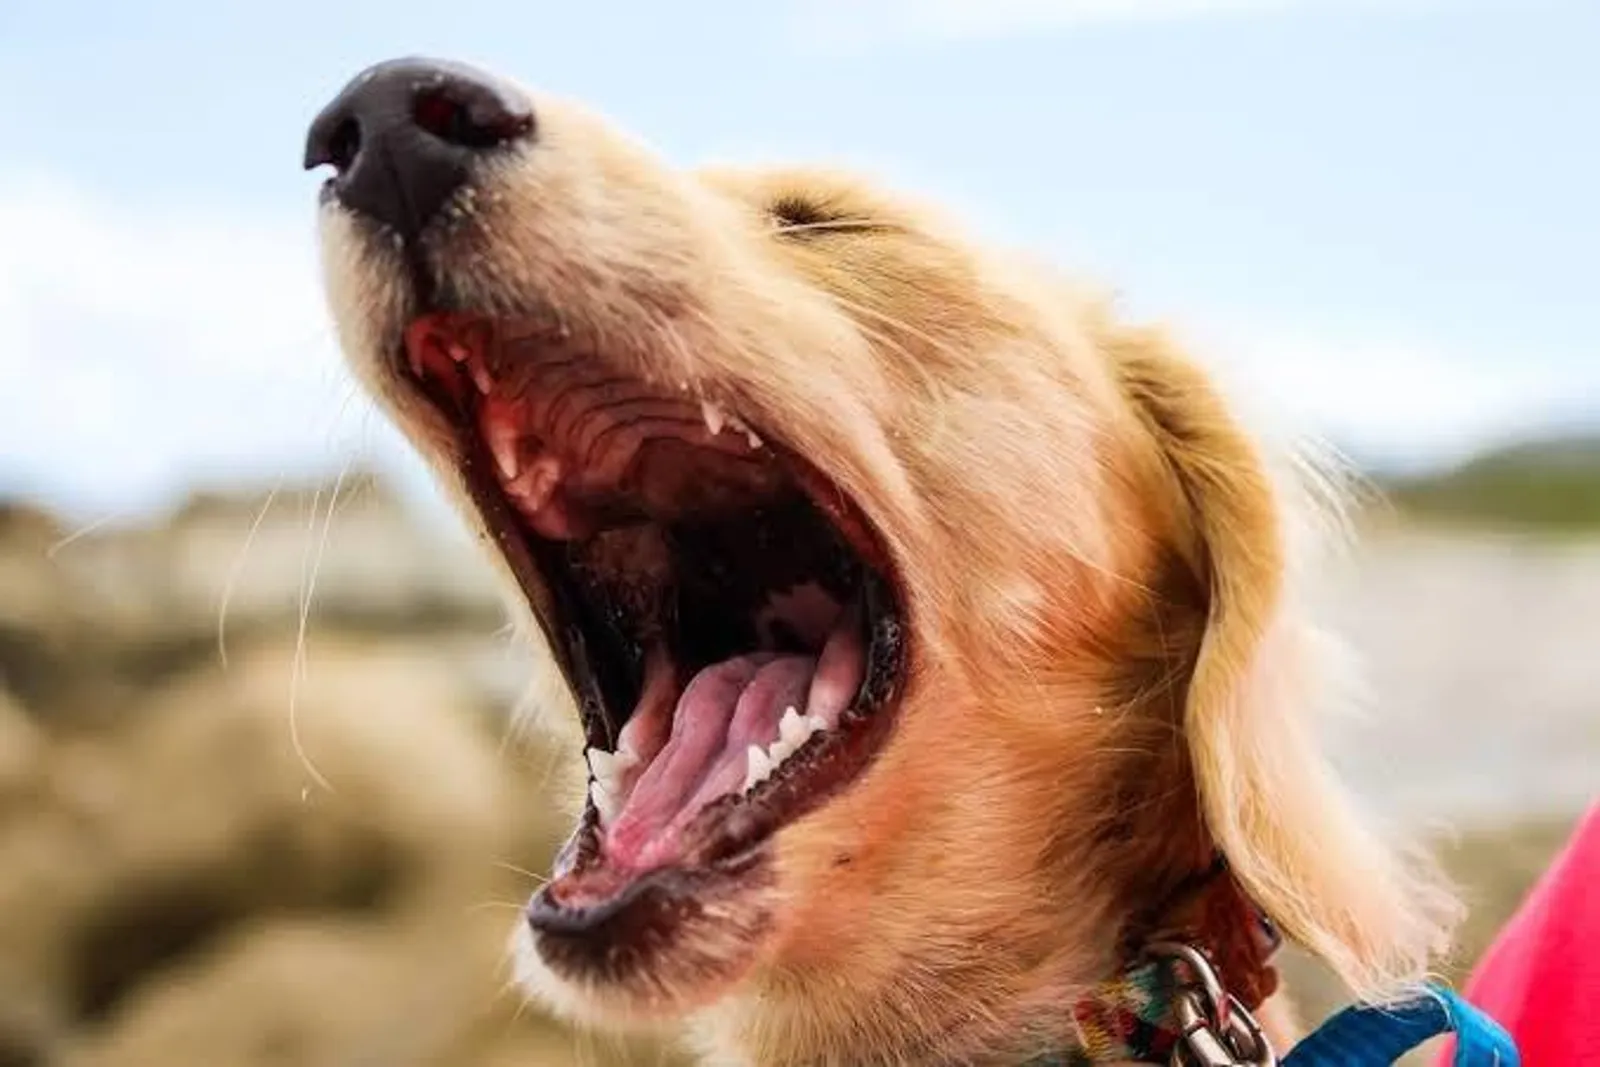 Bisa Memahami Emosi, 25 Fakta Menarik Tentang Anjing ini Bikin Kagum